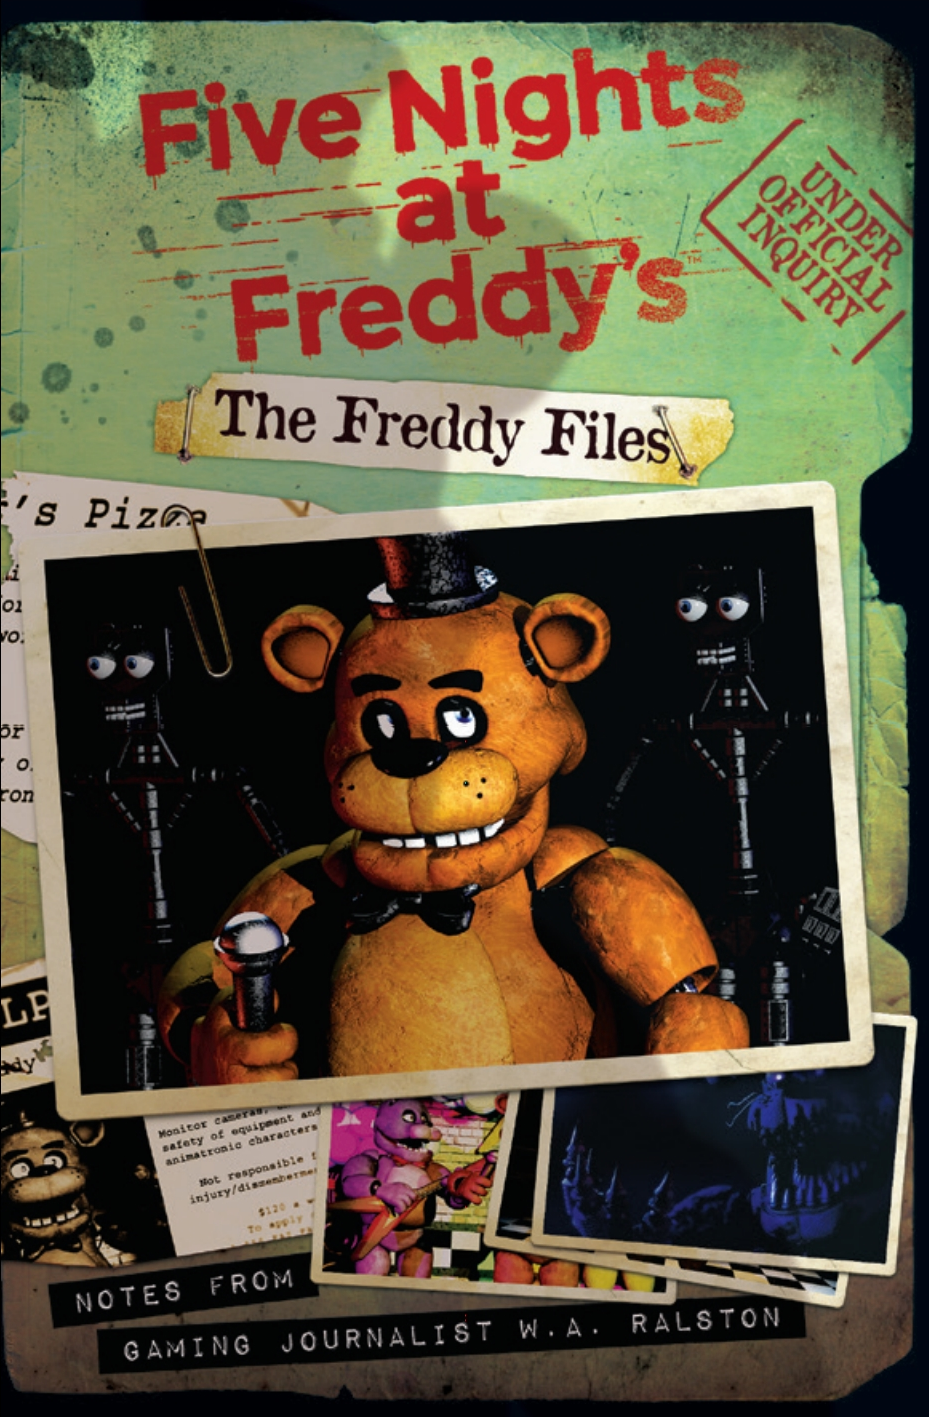 Книга файлы фнафа. Файлы Фредди обновлённое издание. Five Nights at Freddy's файлы Фредди. Книга 5 ночей с Фредди файлы Фредди. Пять ночей с Фредди файлы Фредди.